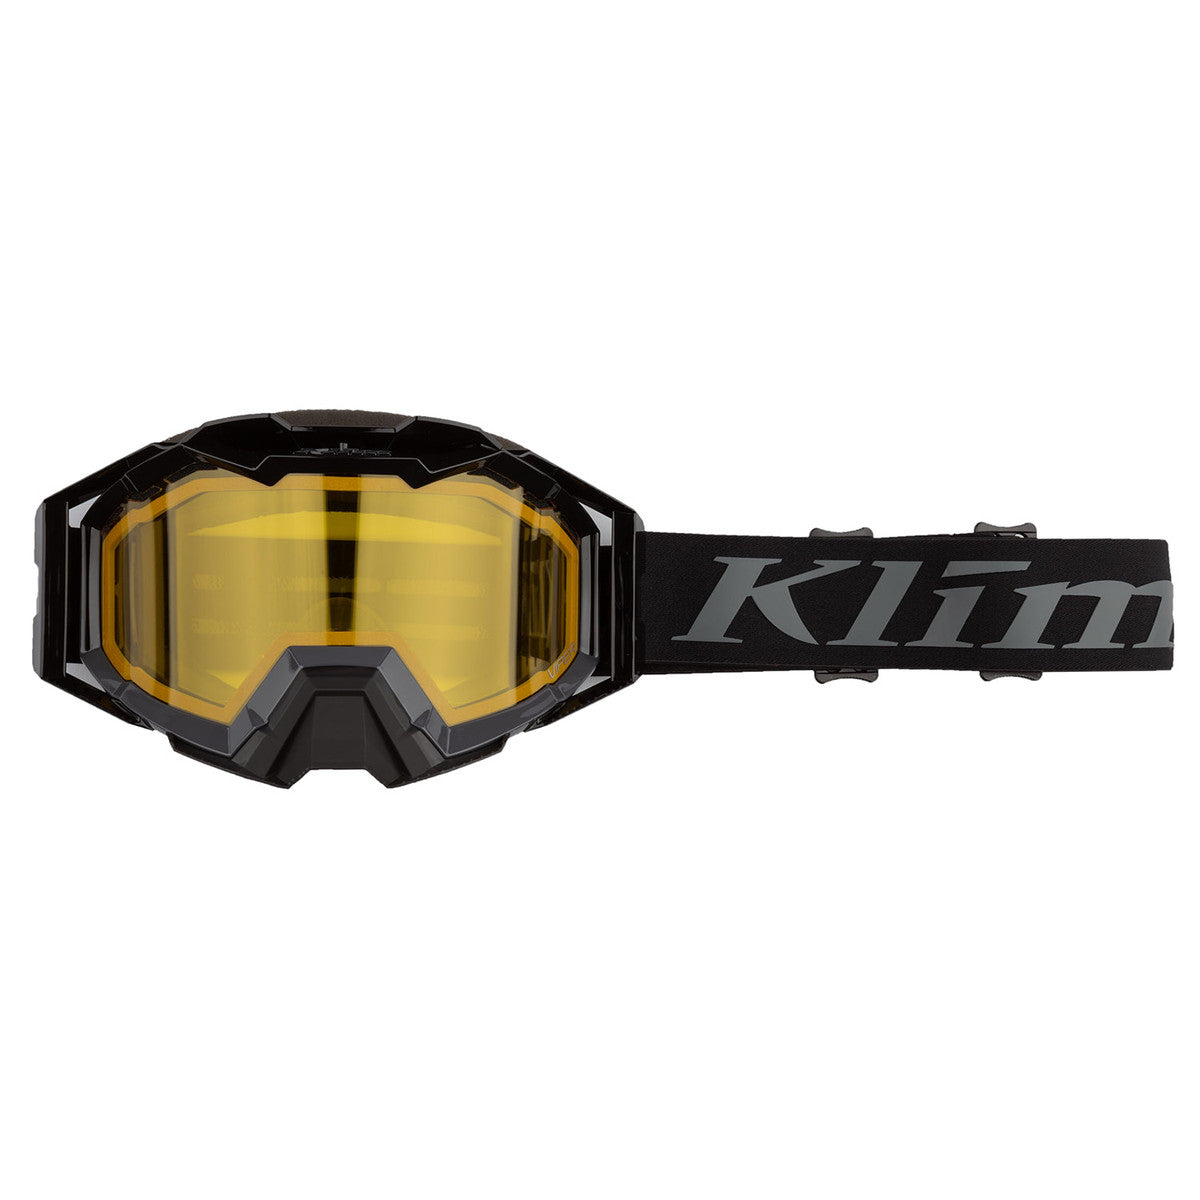 Klim Viper Pro Snow Goggle